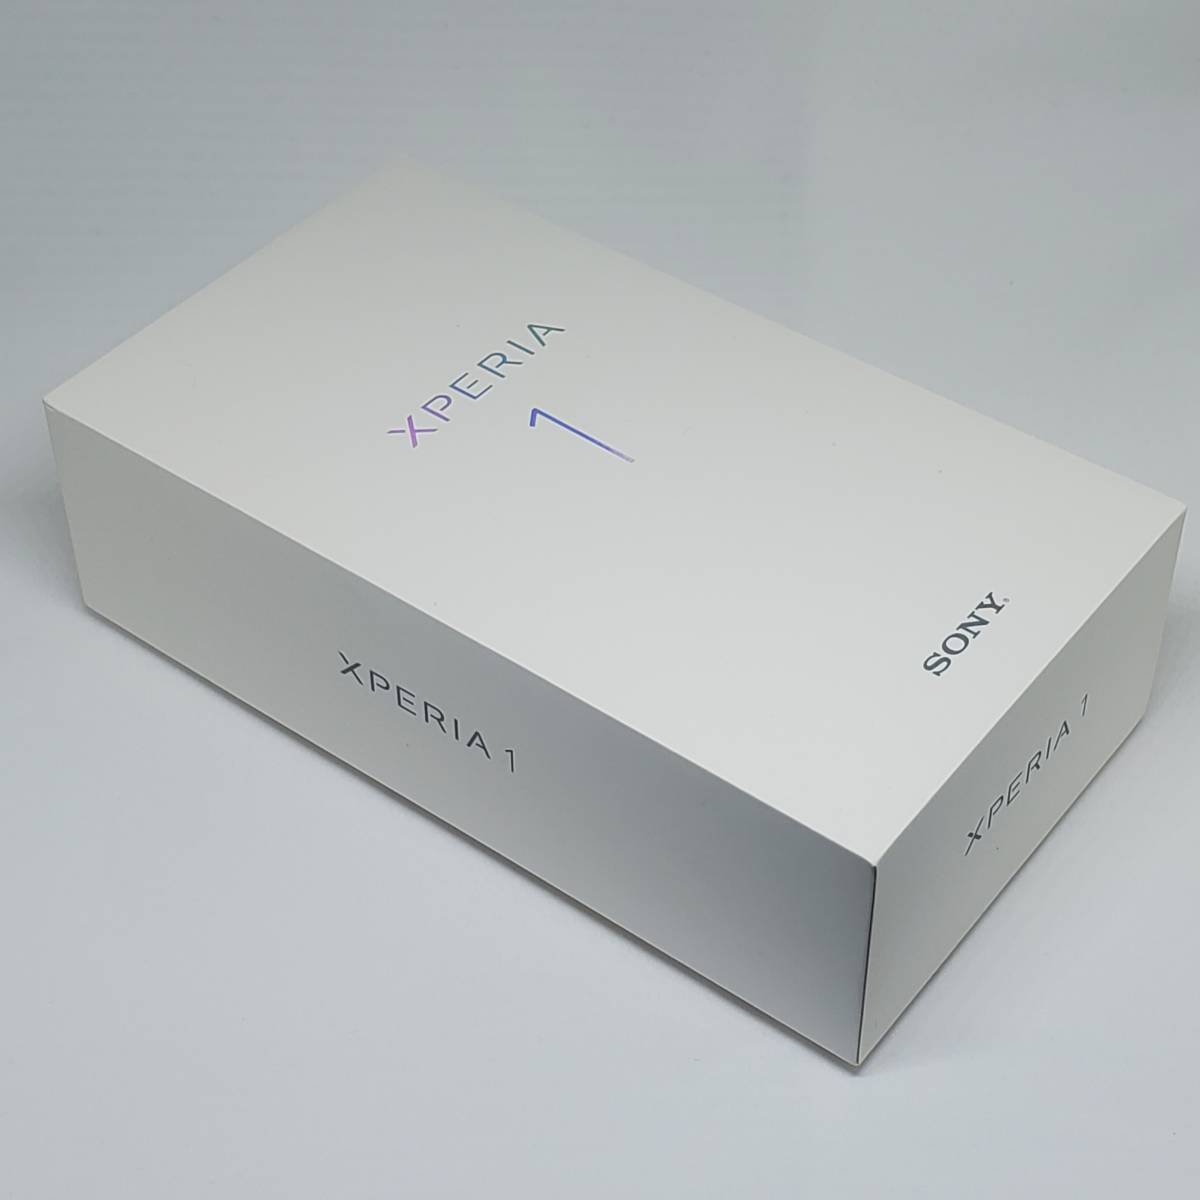 新品同等 Sony Xperia1 Xperia 1 SOV40 ホワイト 送料無料 SIMロック 